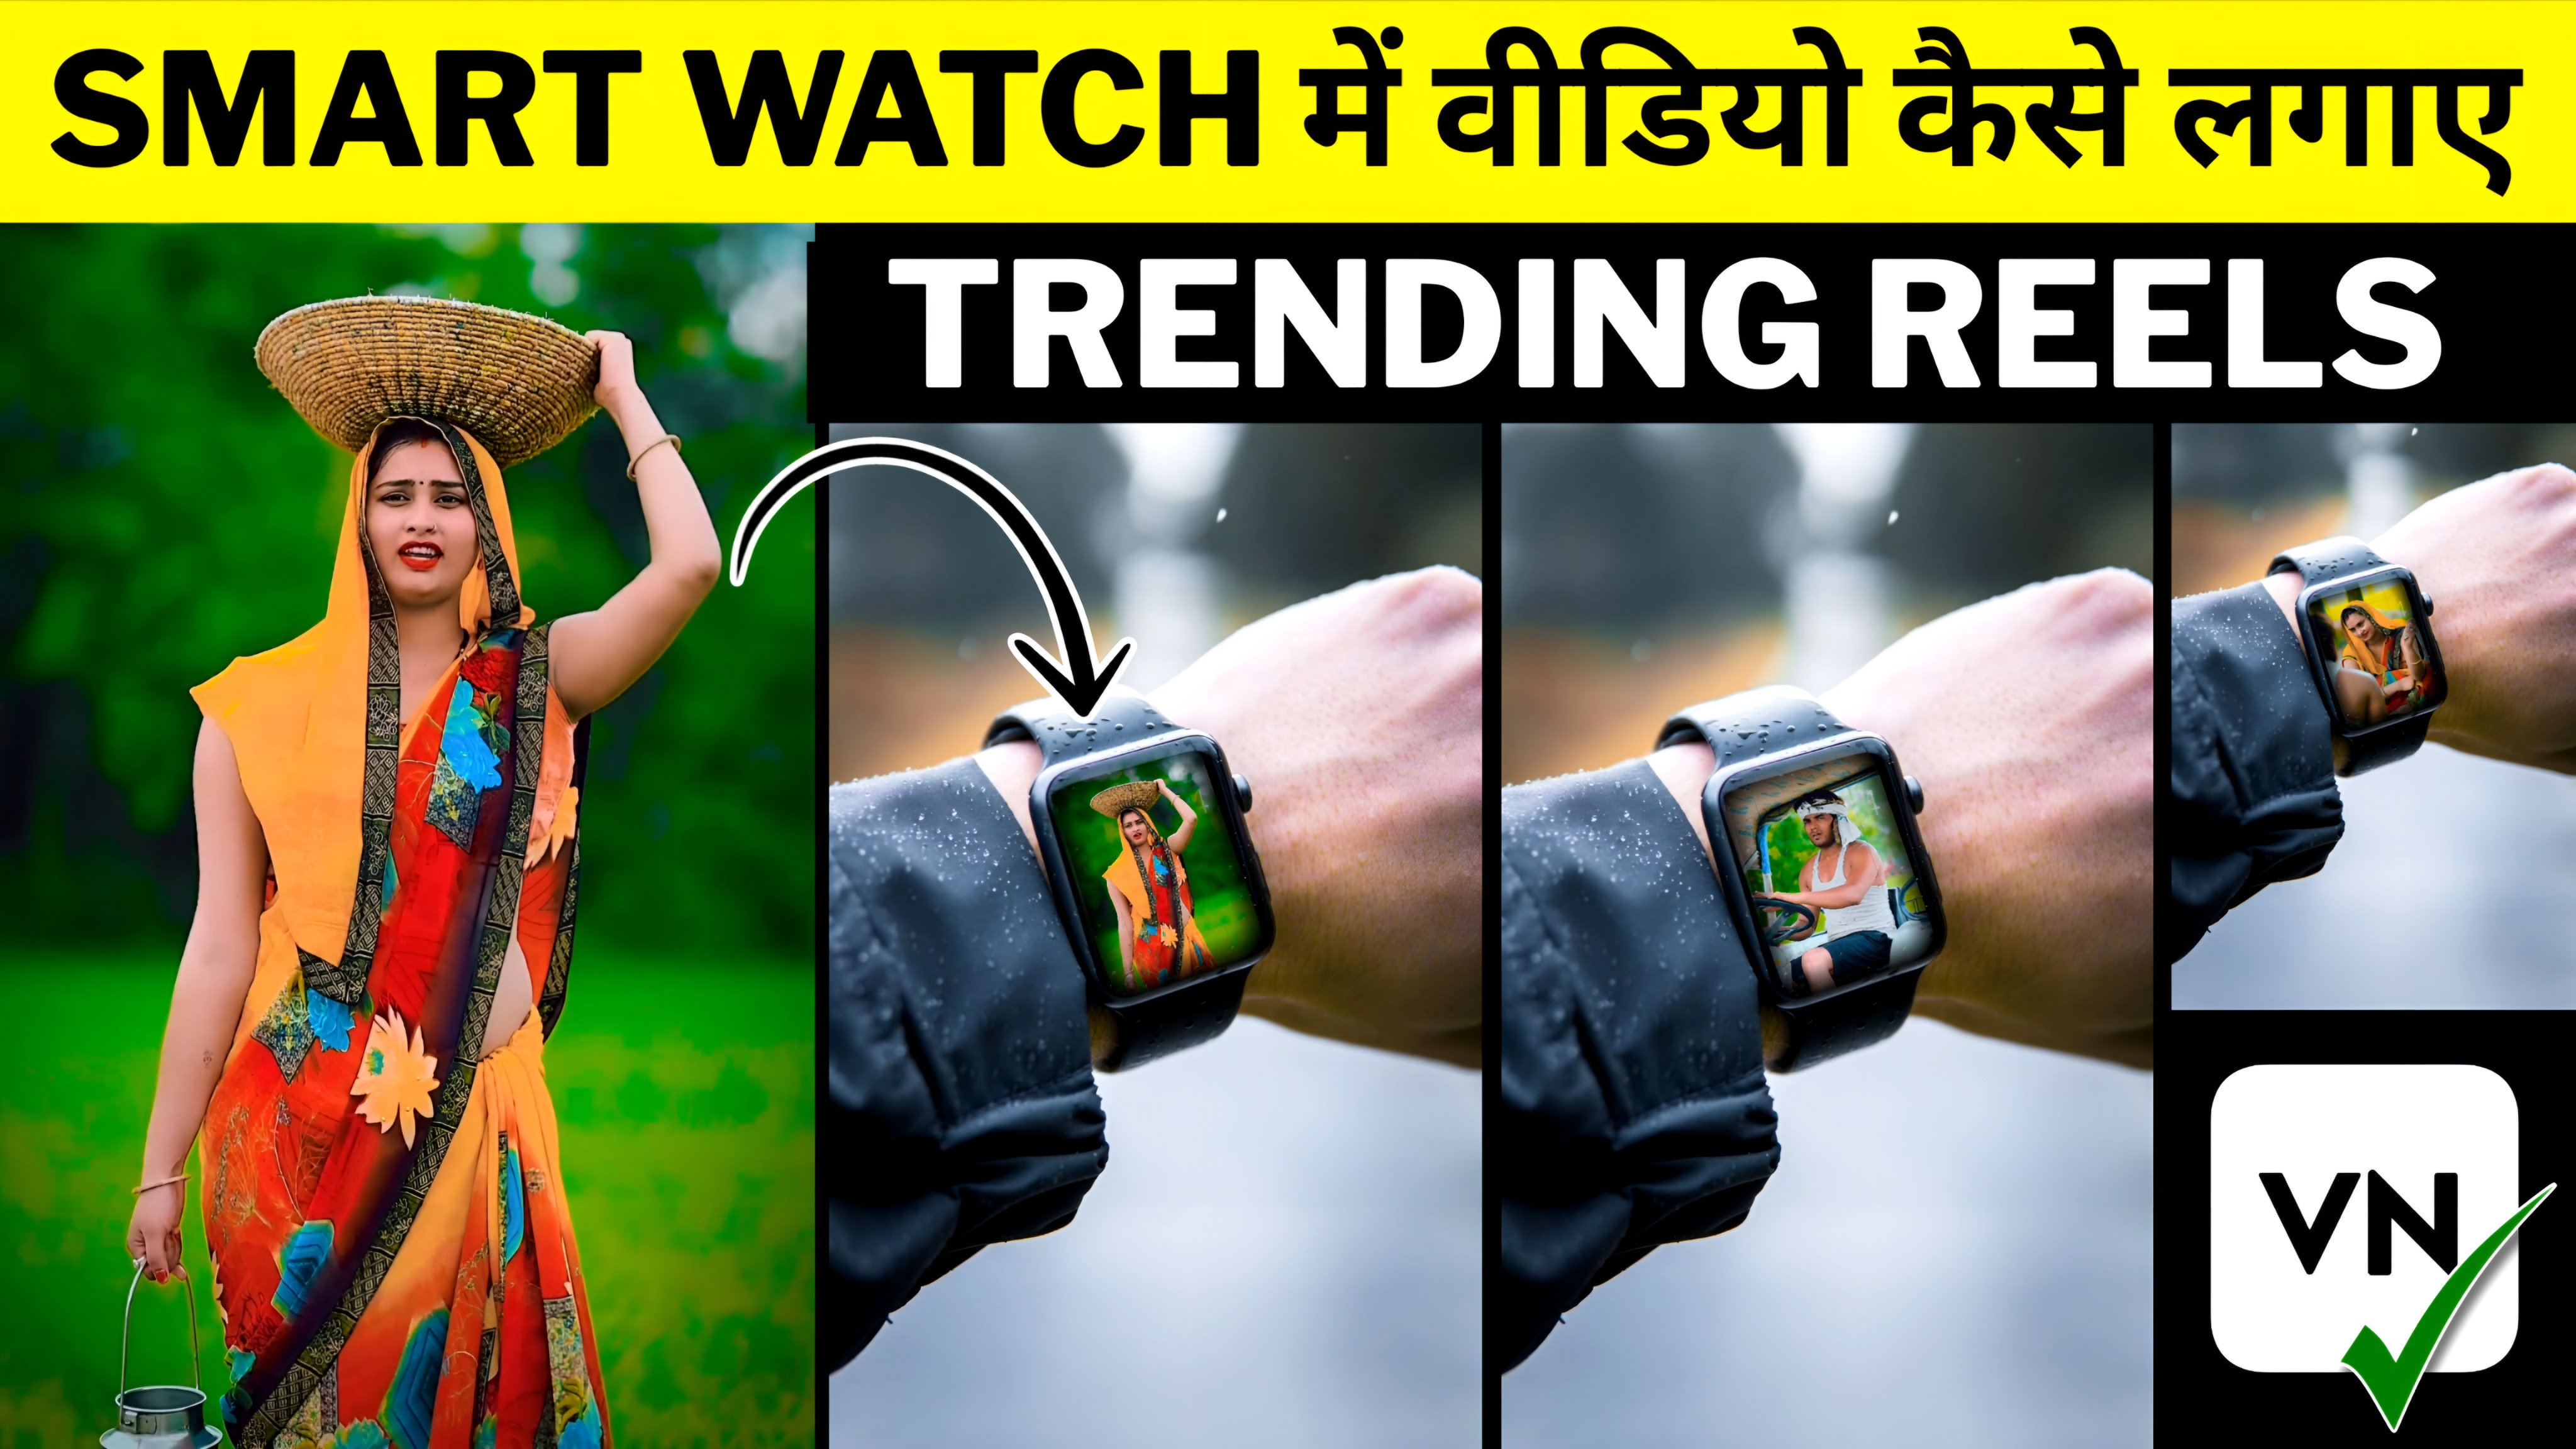 Viral Smart Watch Reels Editing || Instagram Trending Reels Editing || VN Video Editing